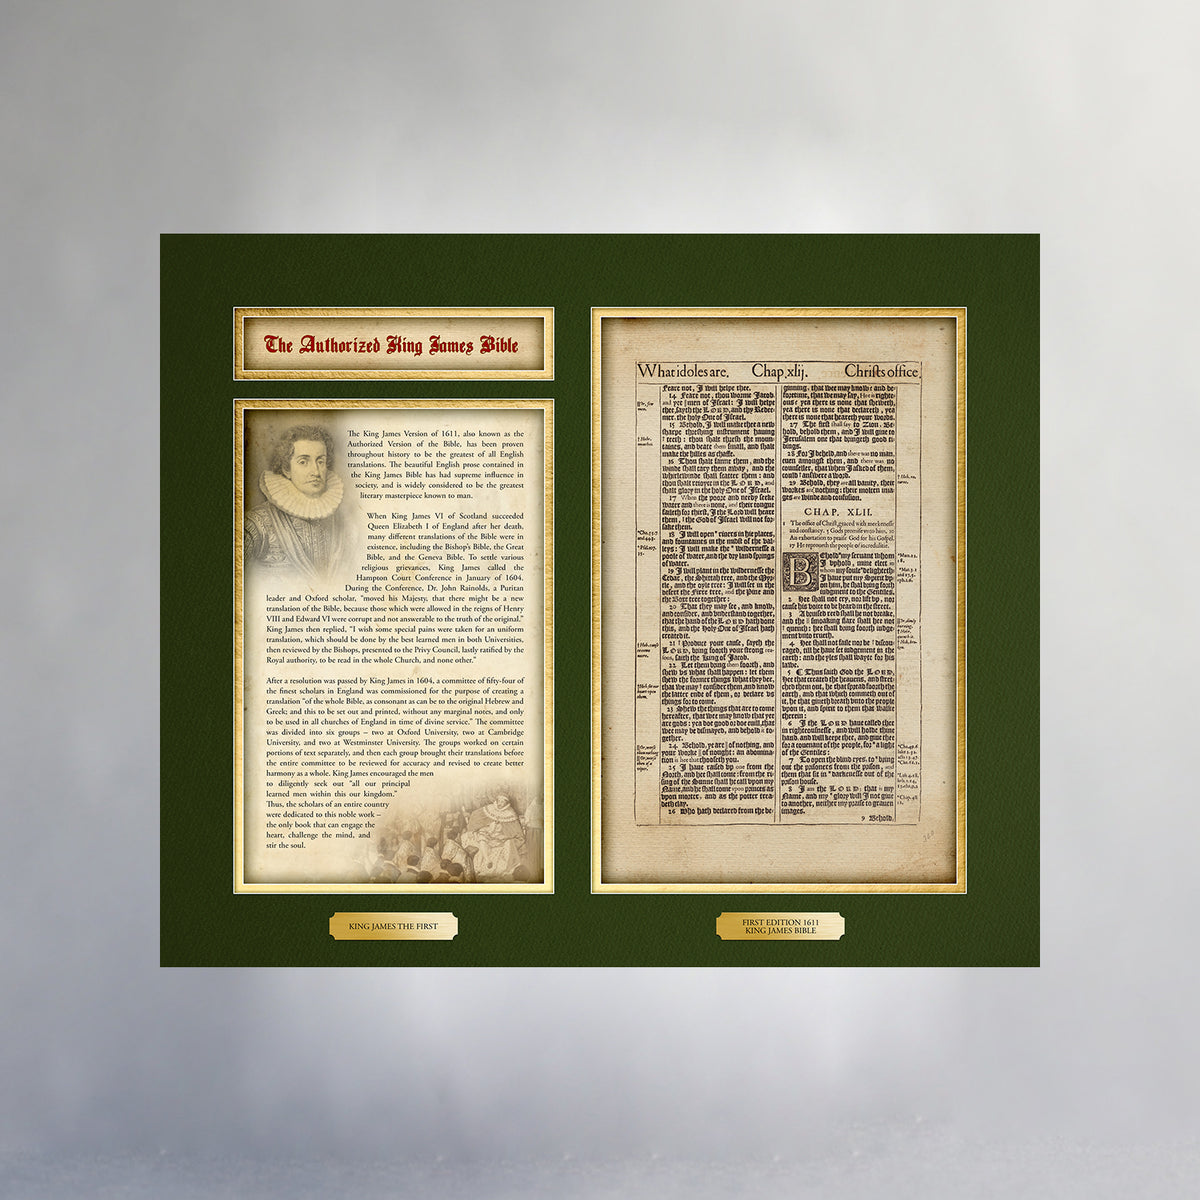 24&quot; x 20&quot; Giclée Fine Art Print - Heritage Collection - King James Bible